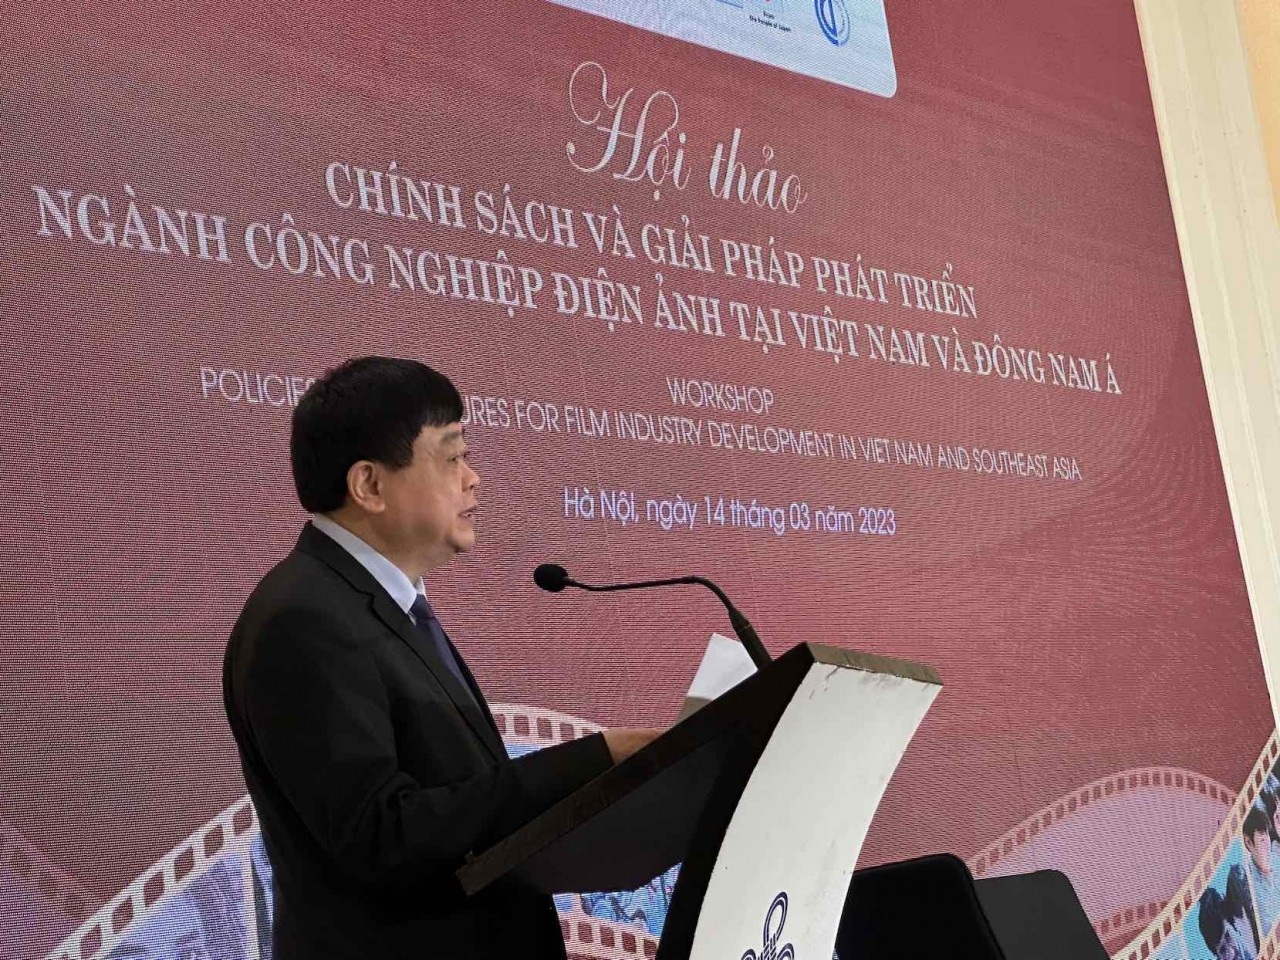 Hội thảo Điện ảnh quốc tế: Hoạt động góp phần hoàn thiện Chính sách và giải pháp phát triển công nghiệp Điện ảnh tại Việt Nam và Đông Nam Á’